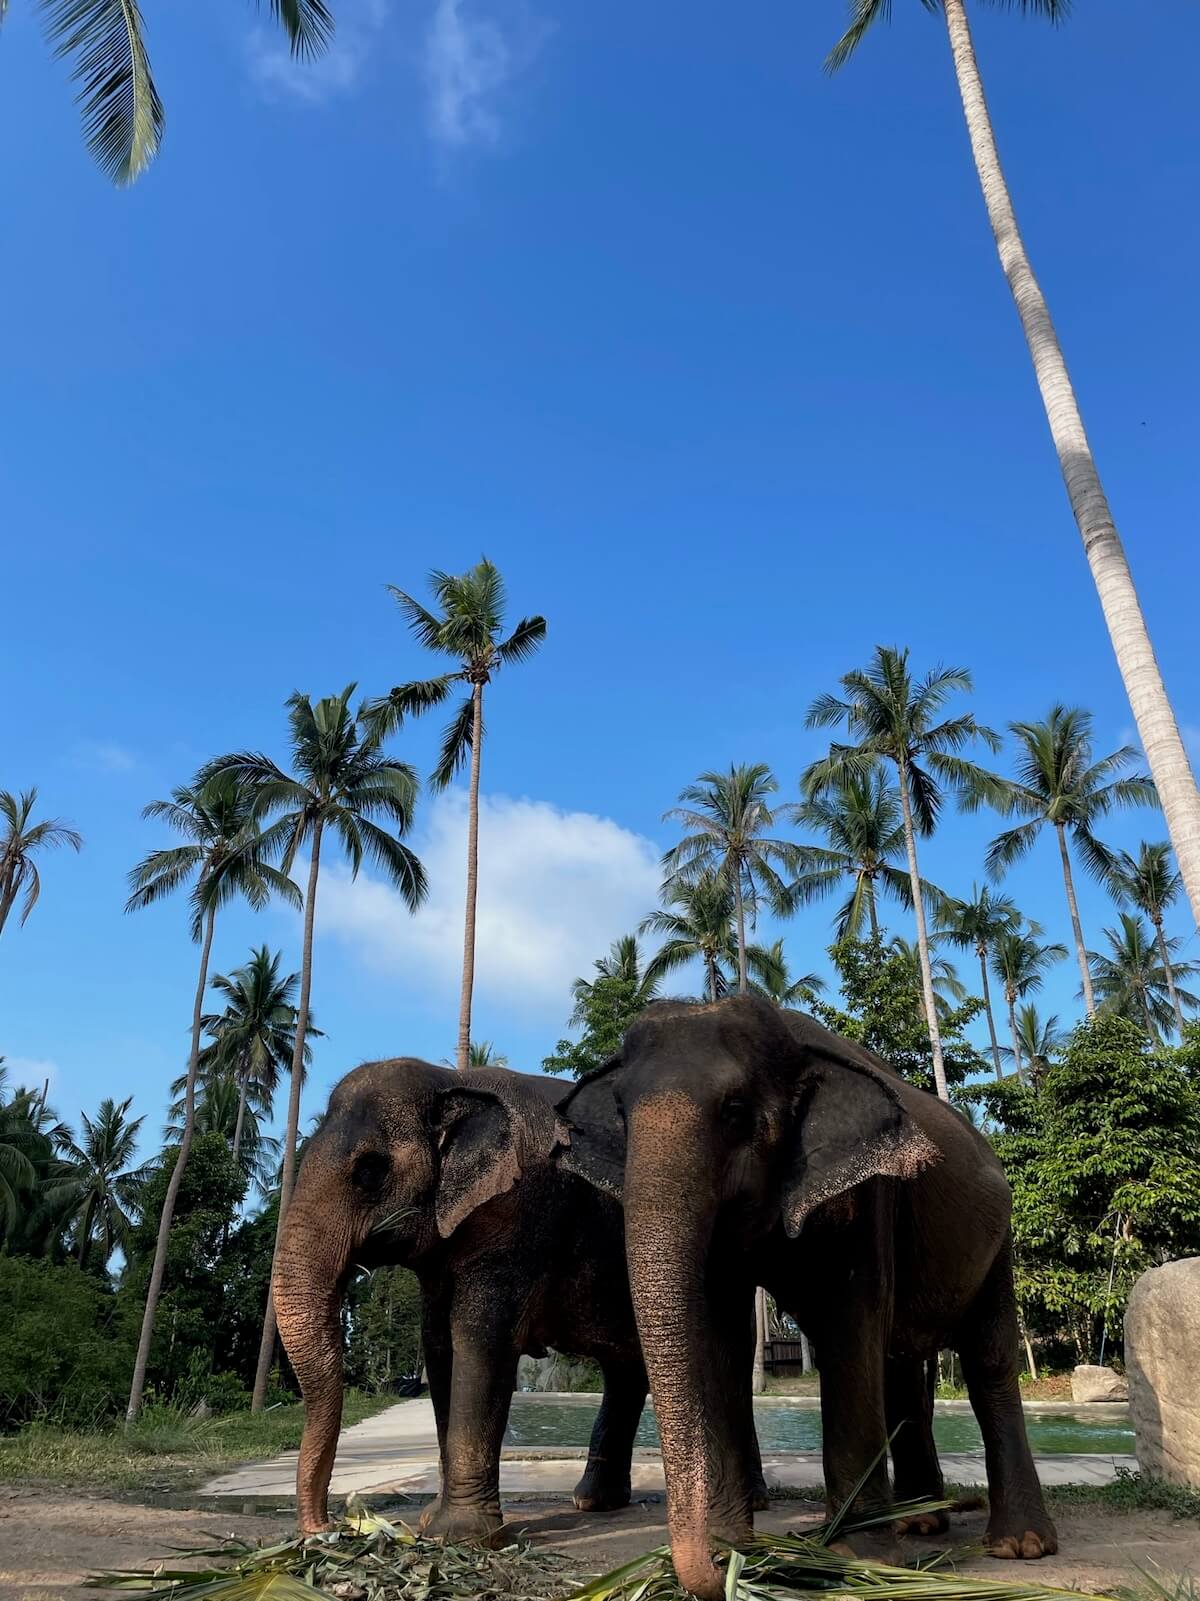 Koh Samui ethical elephant sanctuary in Thailand